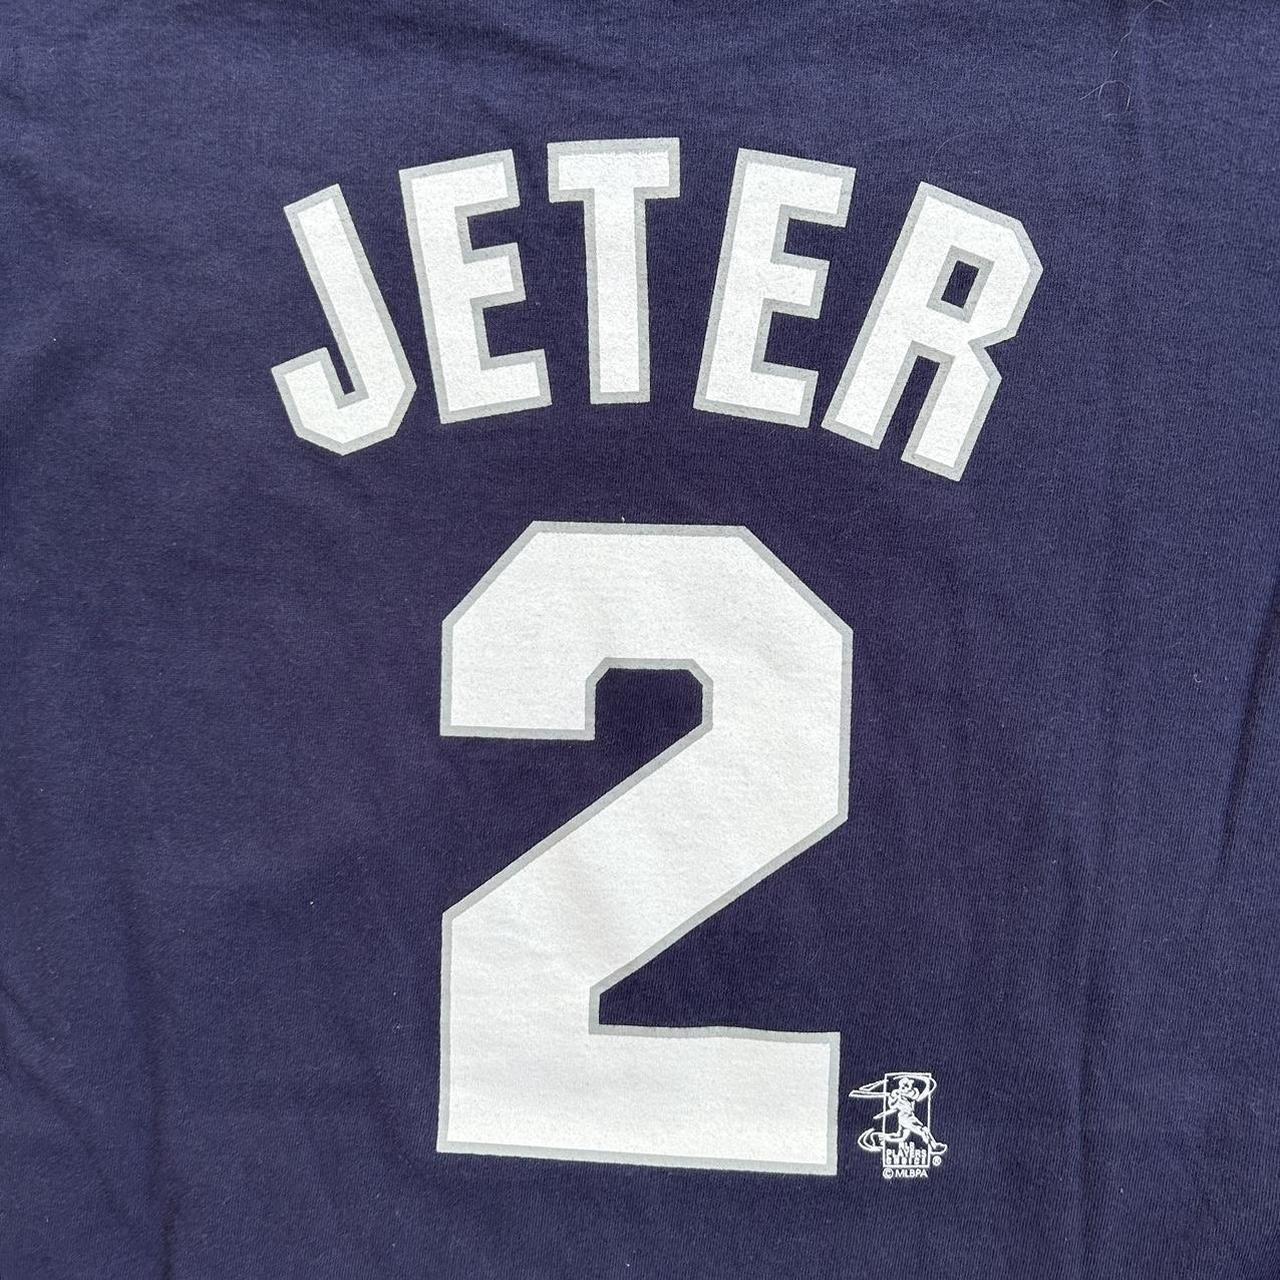 Vintage New York Yankees Derek Jeter American League - Depop